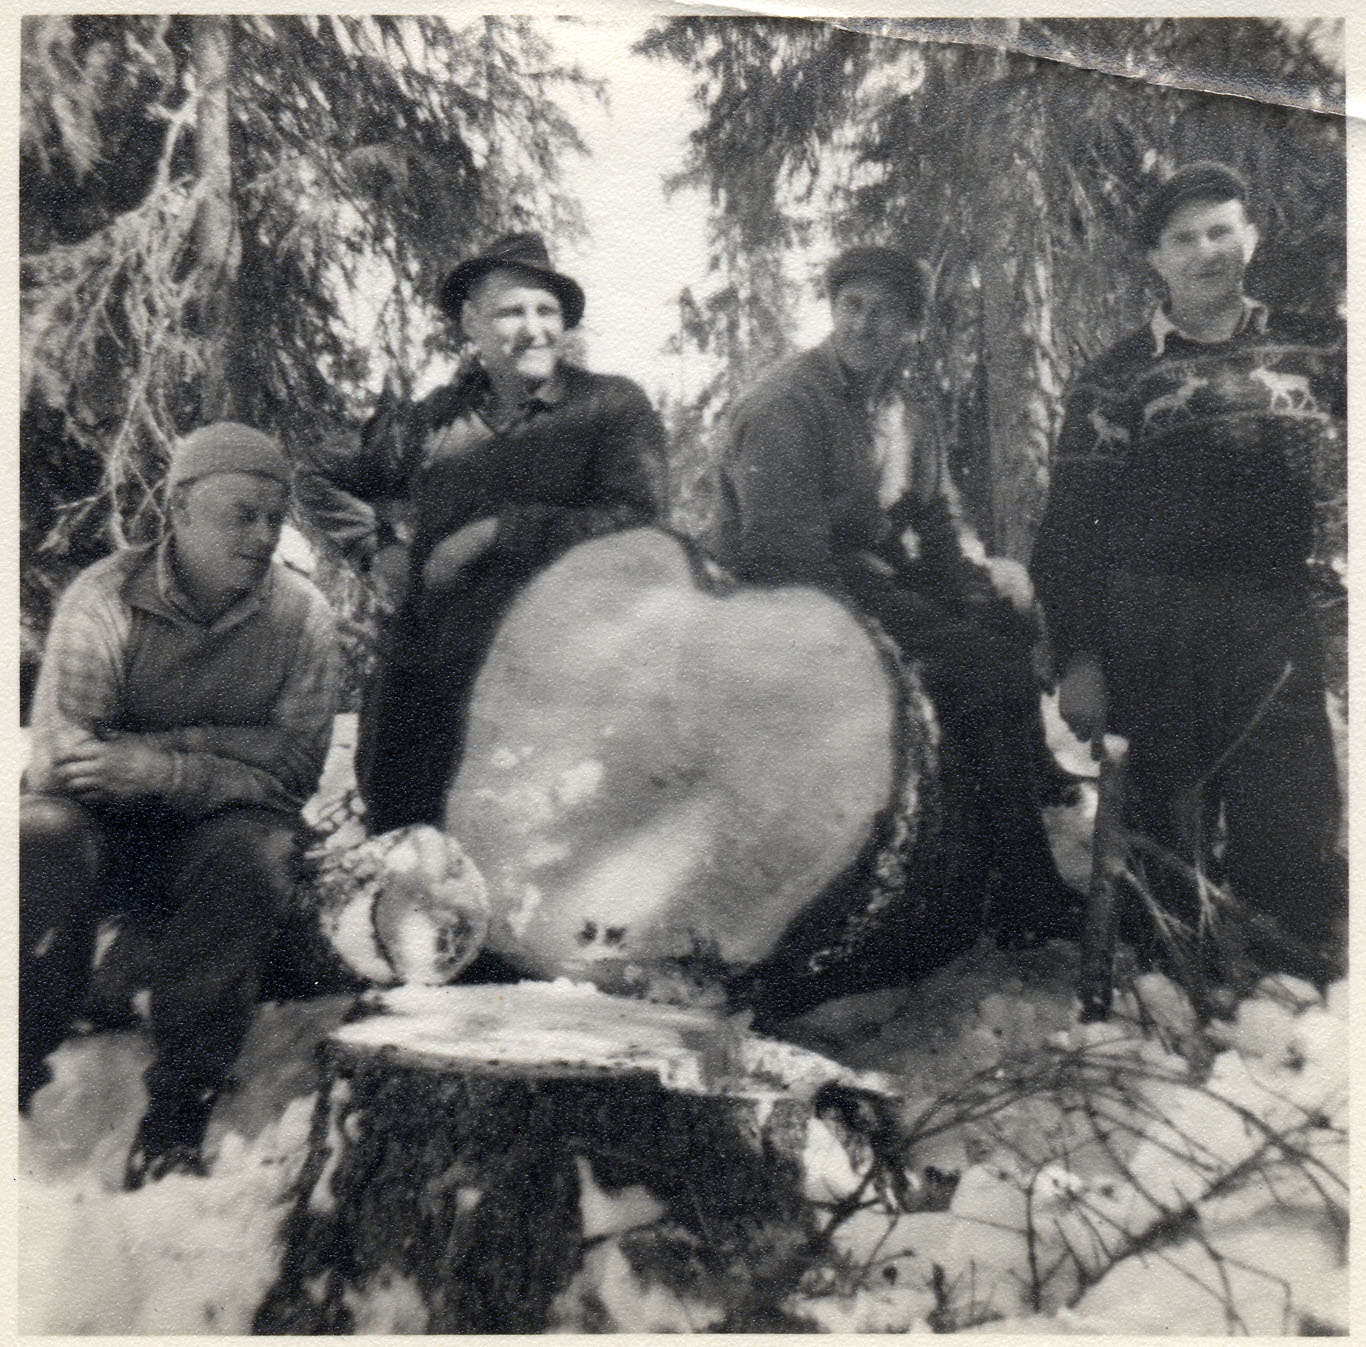 Syndikalistiska skogsarbetare 1952. Inom den svenska skogsbranschen förekom länge konfliktsamarbete över organisationsgränserna. 